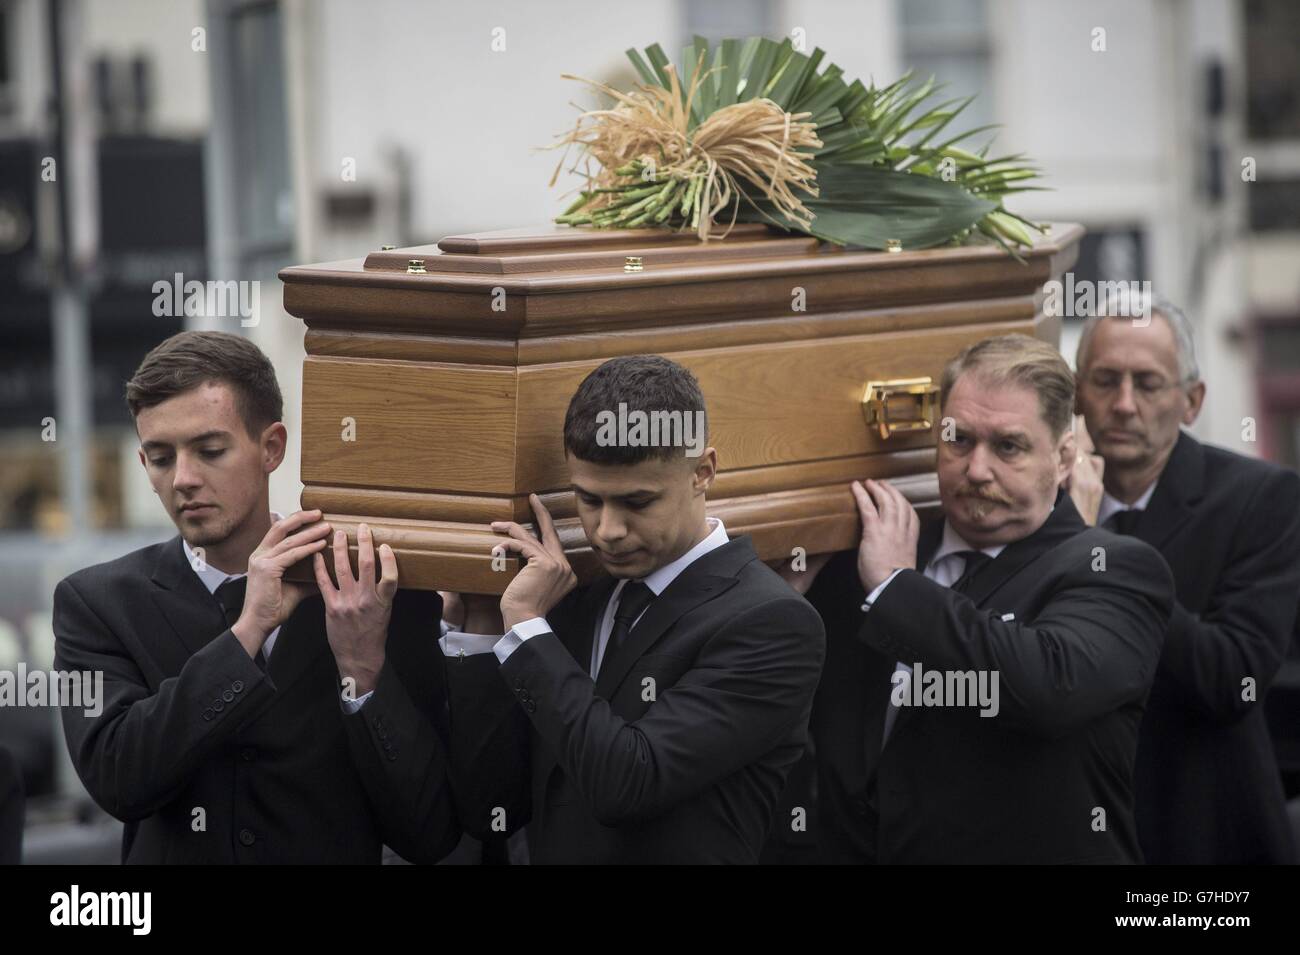 Les amis et la famille portent le cercueil de Ben Pocock, l'étudiant de l'université qui était à bord du vol MH17 de Malaysia Airlines quand il s'est écrasé en Ukraine, comme la fête funéraire sortie St Jean l'église baptiste, Keynsham, Bristol, où ses funérailles ont eu lieu. Banque D'Images